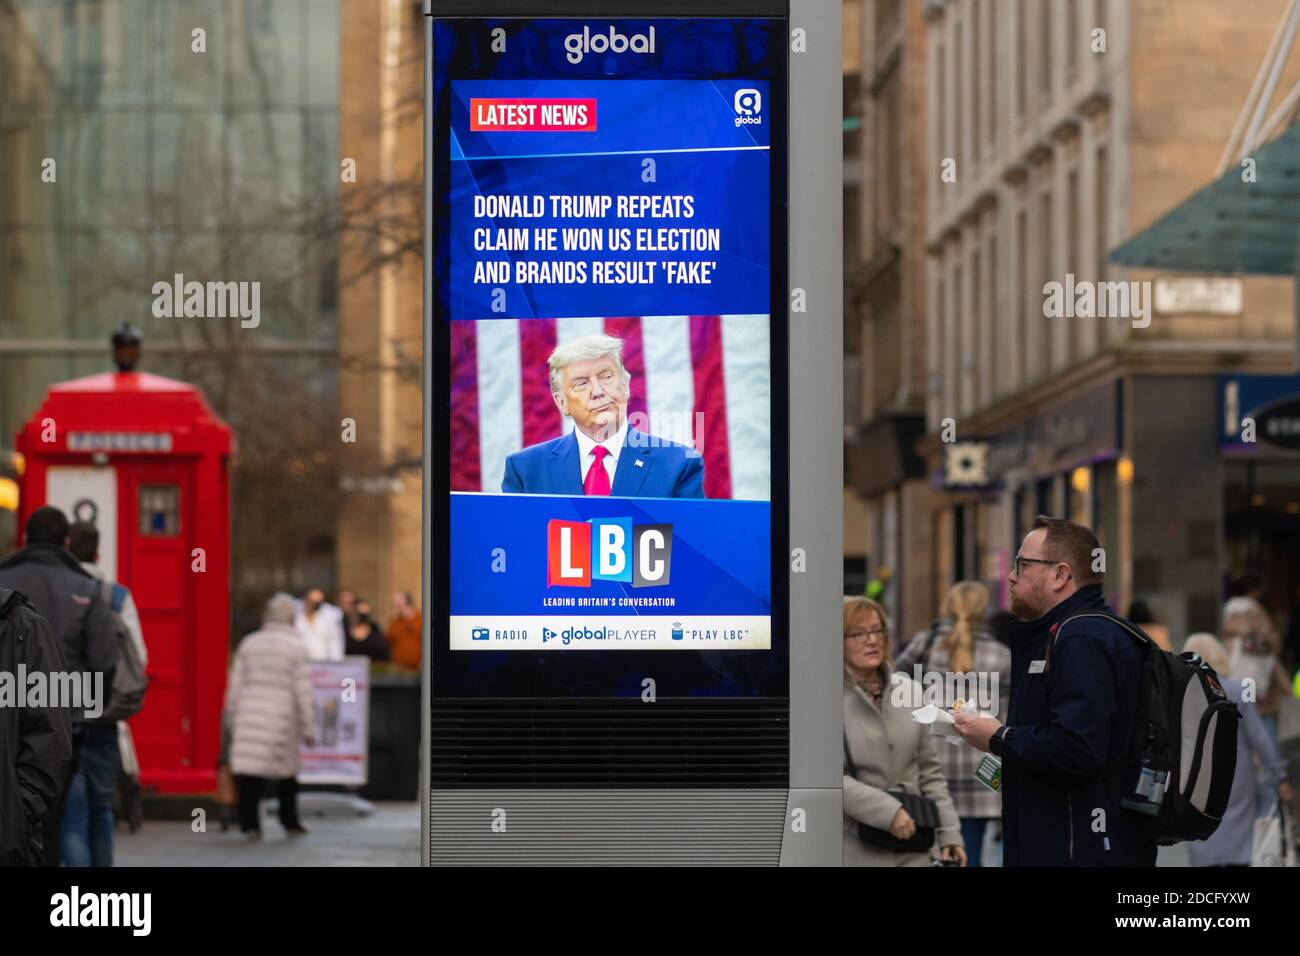 Donald Trump wiederholt behaupten, er gewann uns Wahl und Marken Ergebnis gefälscht - LBC-Überschrift auf Streethub Werbung digitalen Bildschirm - Glasgow, Schottland, Großbritannien Stockfoto